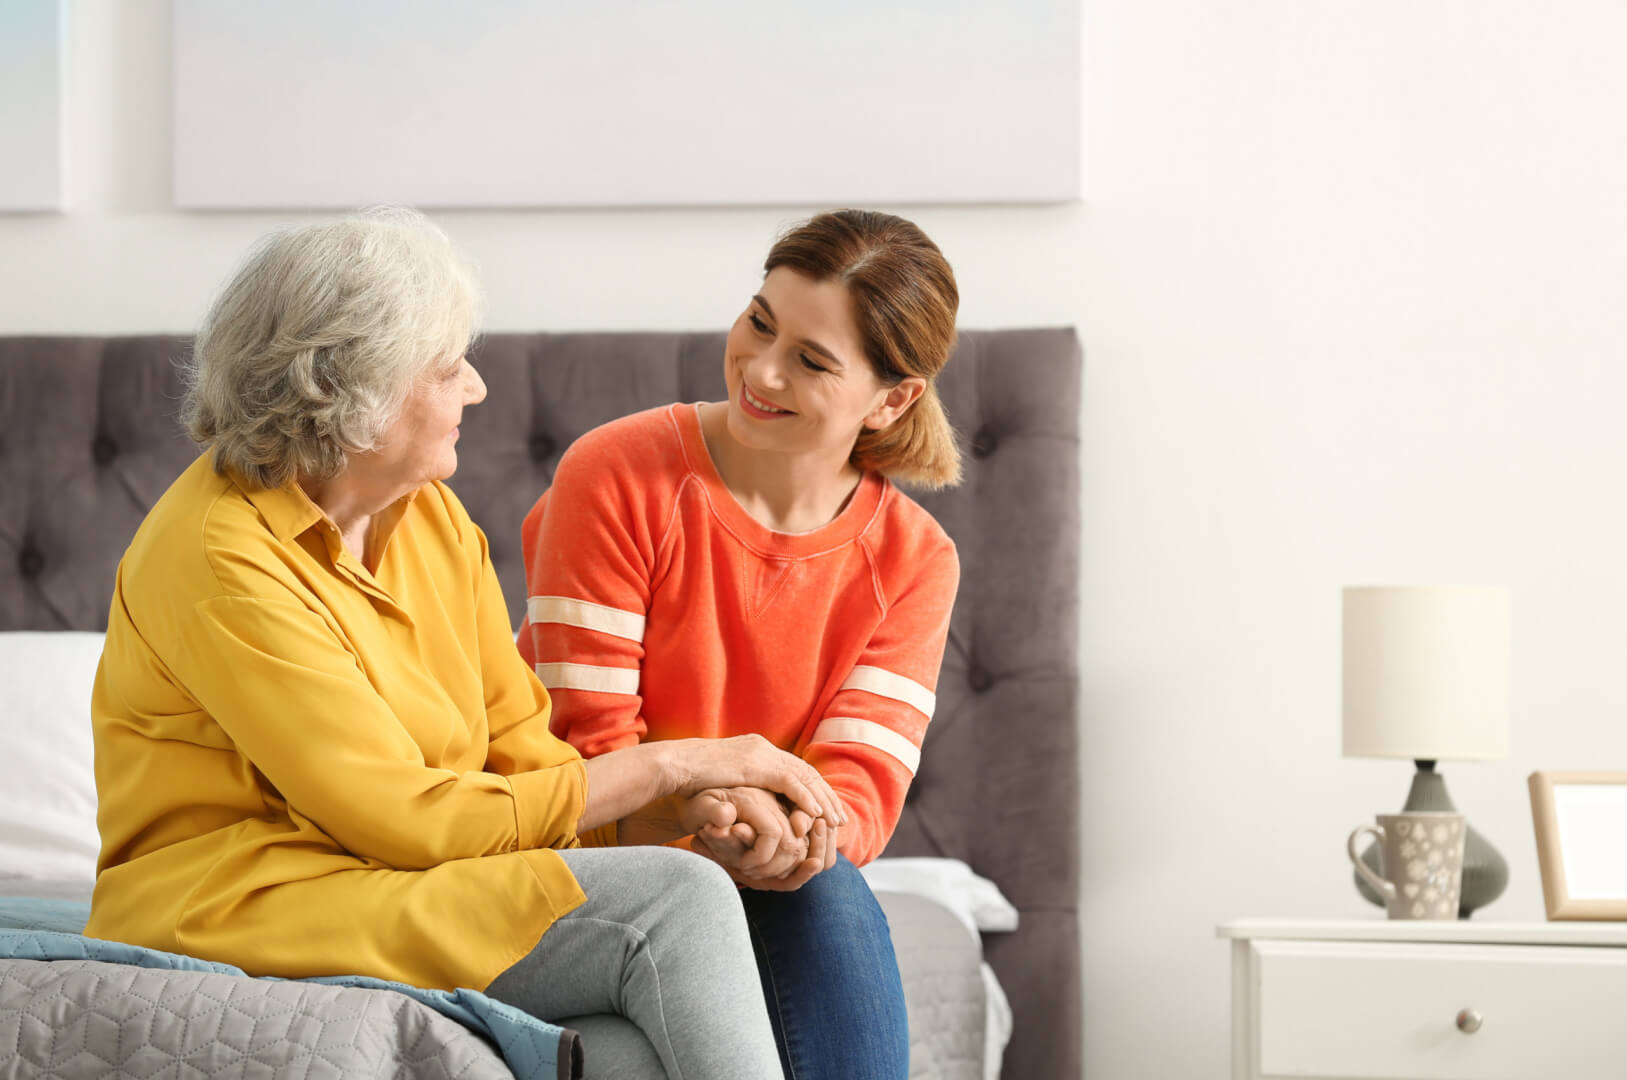 En la imagen, una mujer mayor charla distendidamente con una cuidadora mientras están sentadas en la casa y cogidas de las manos.